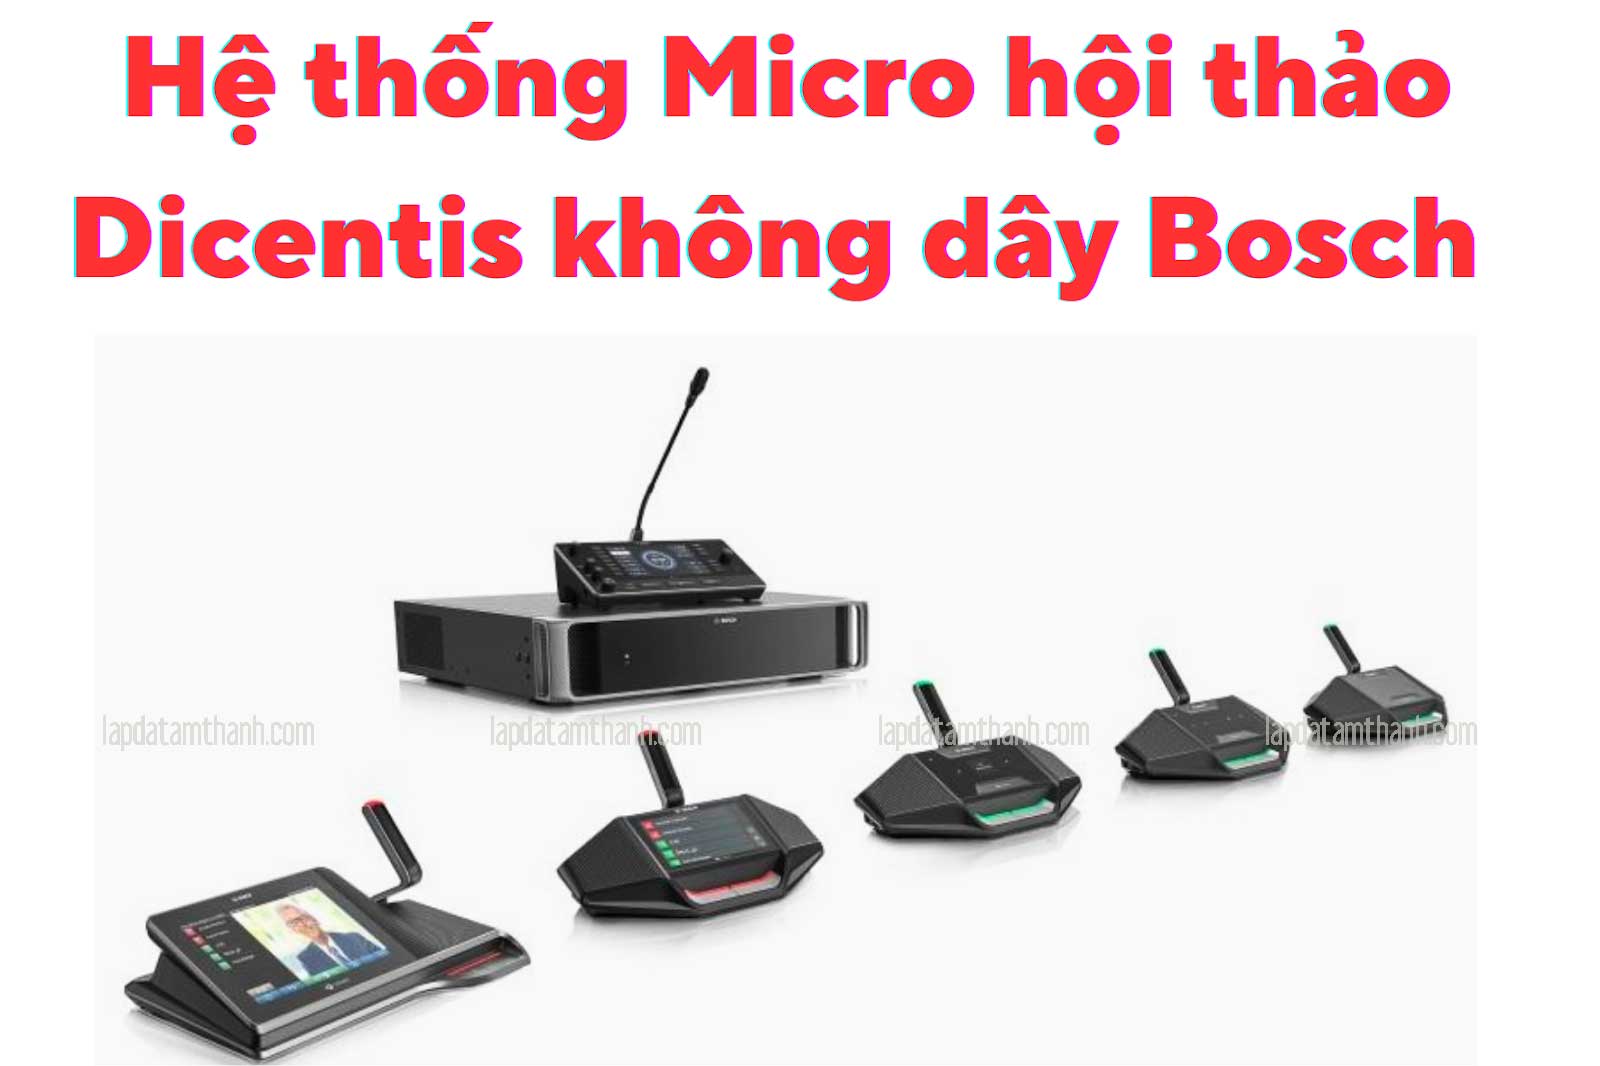 Hệ thống Micro không dây Bosch hội thảo Dicentis